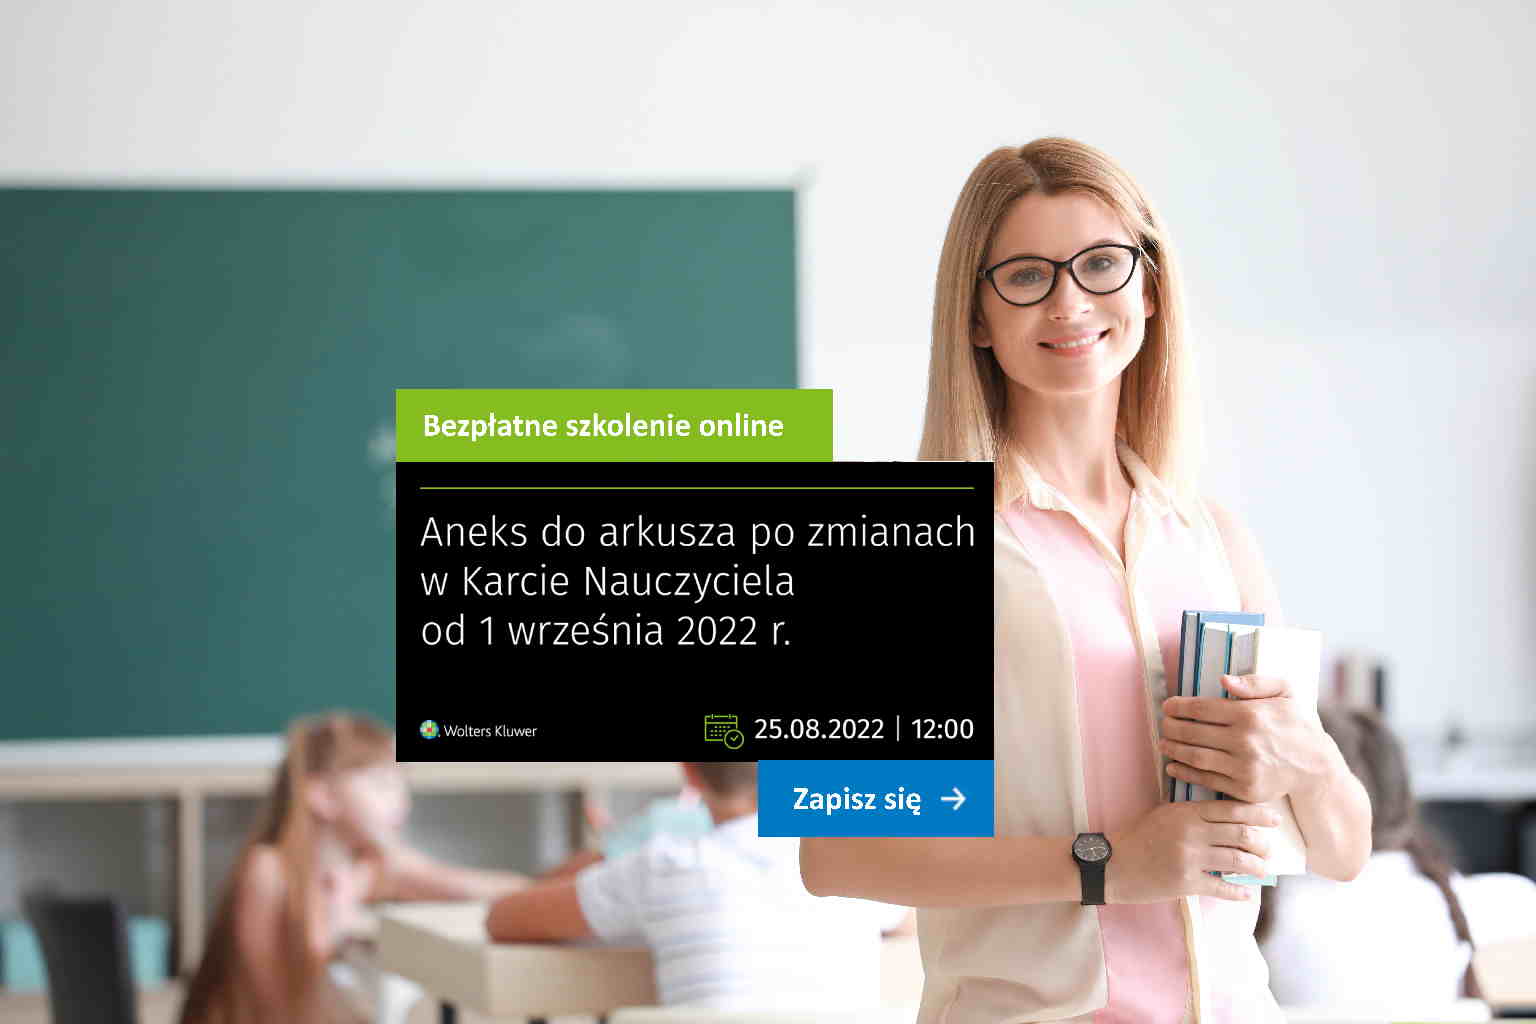 Aneks do arkusza po zmianach w Karcie Nauczyciela od 1 września 2022 r. - zaproszenie na szkolenie